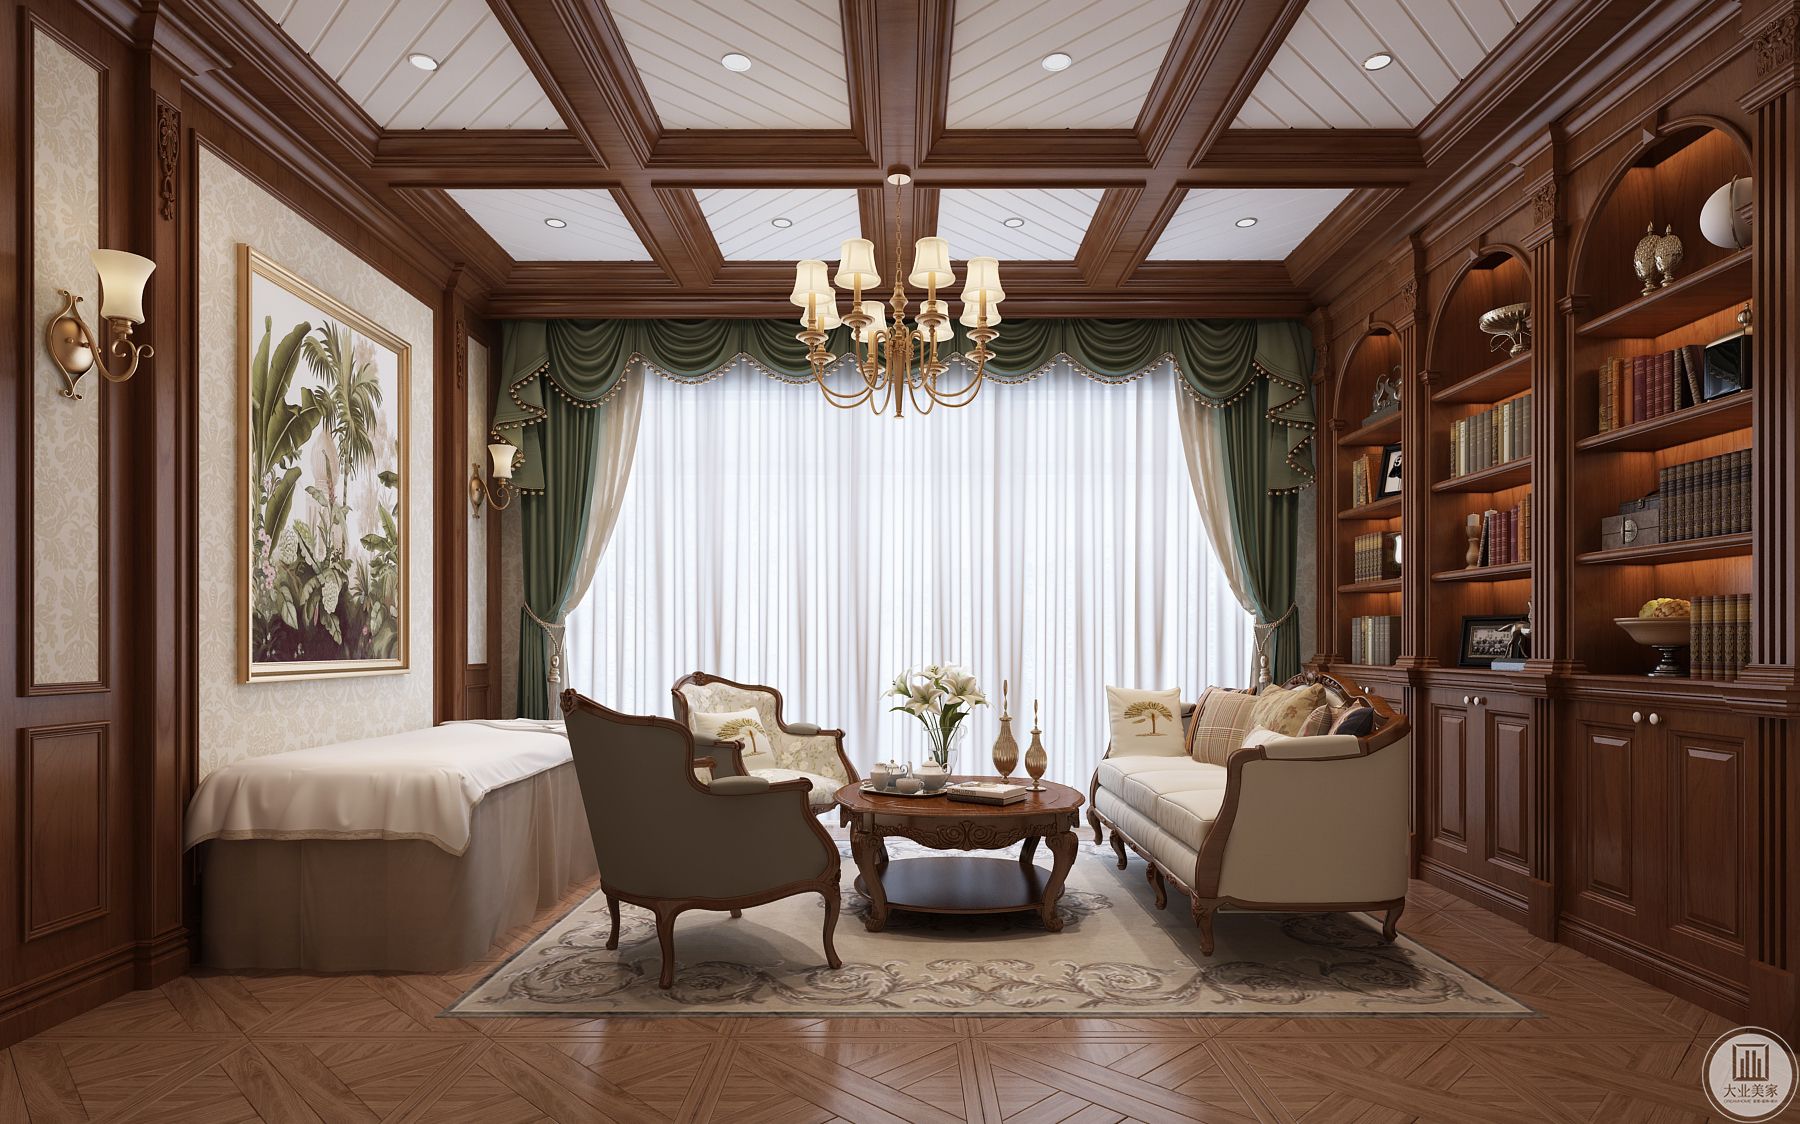 古典装饰的书房，原木的桌椅结合中式雕花吊灯，兰花清幽做点缀。 